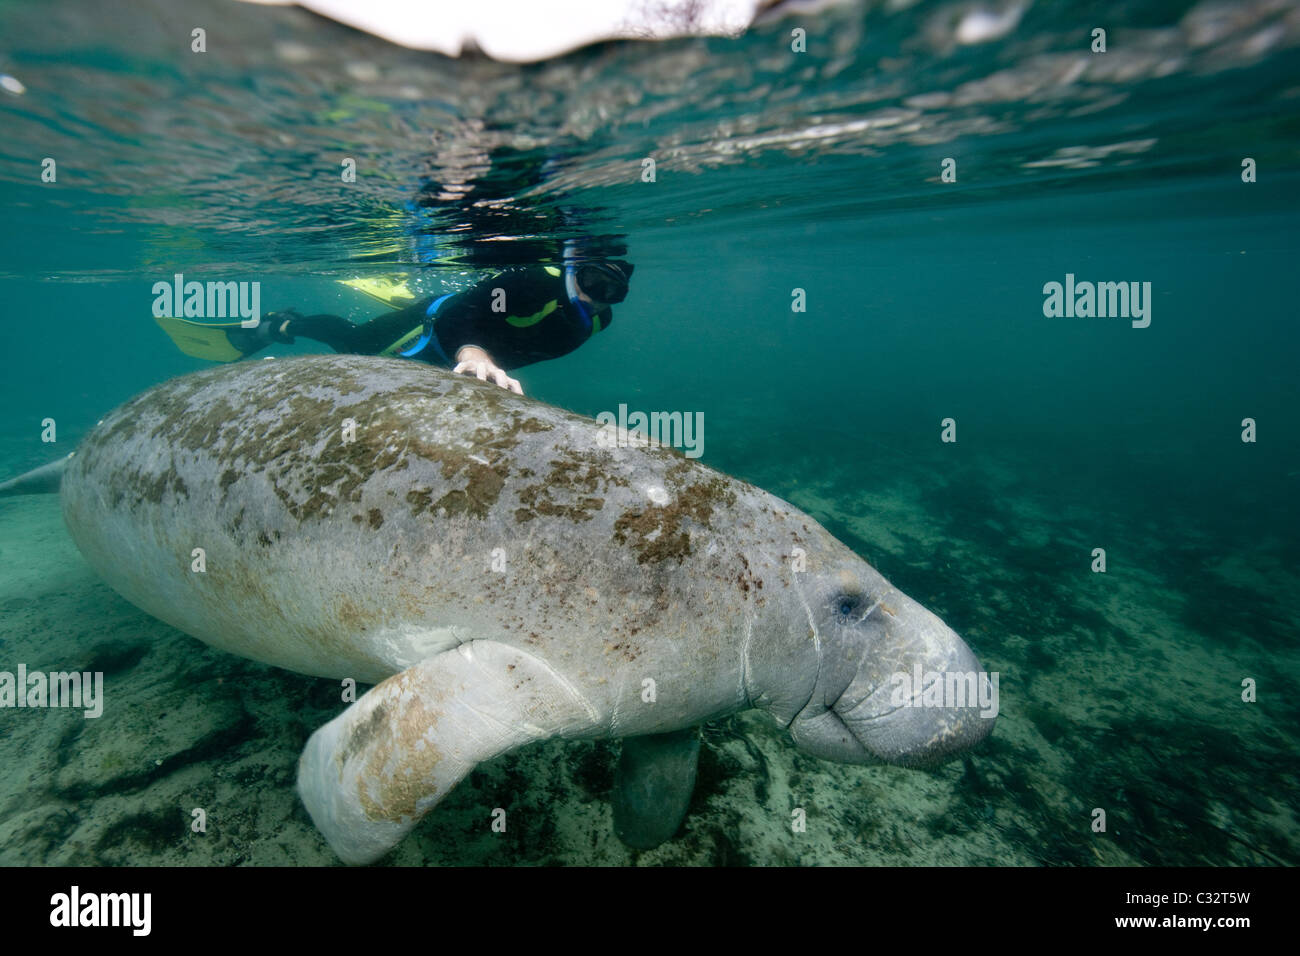 Snorkeler with manatee Stock Photo